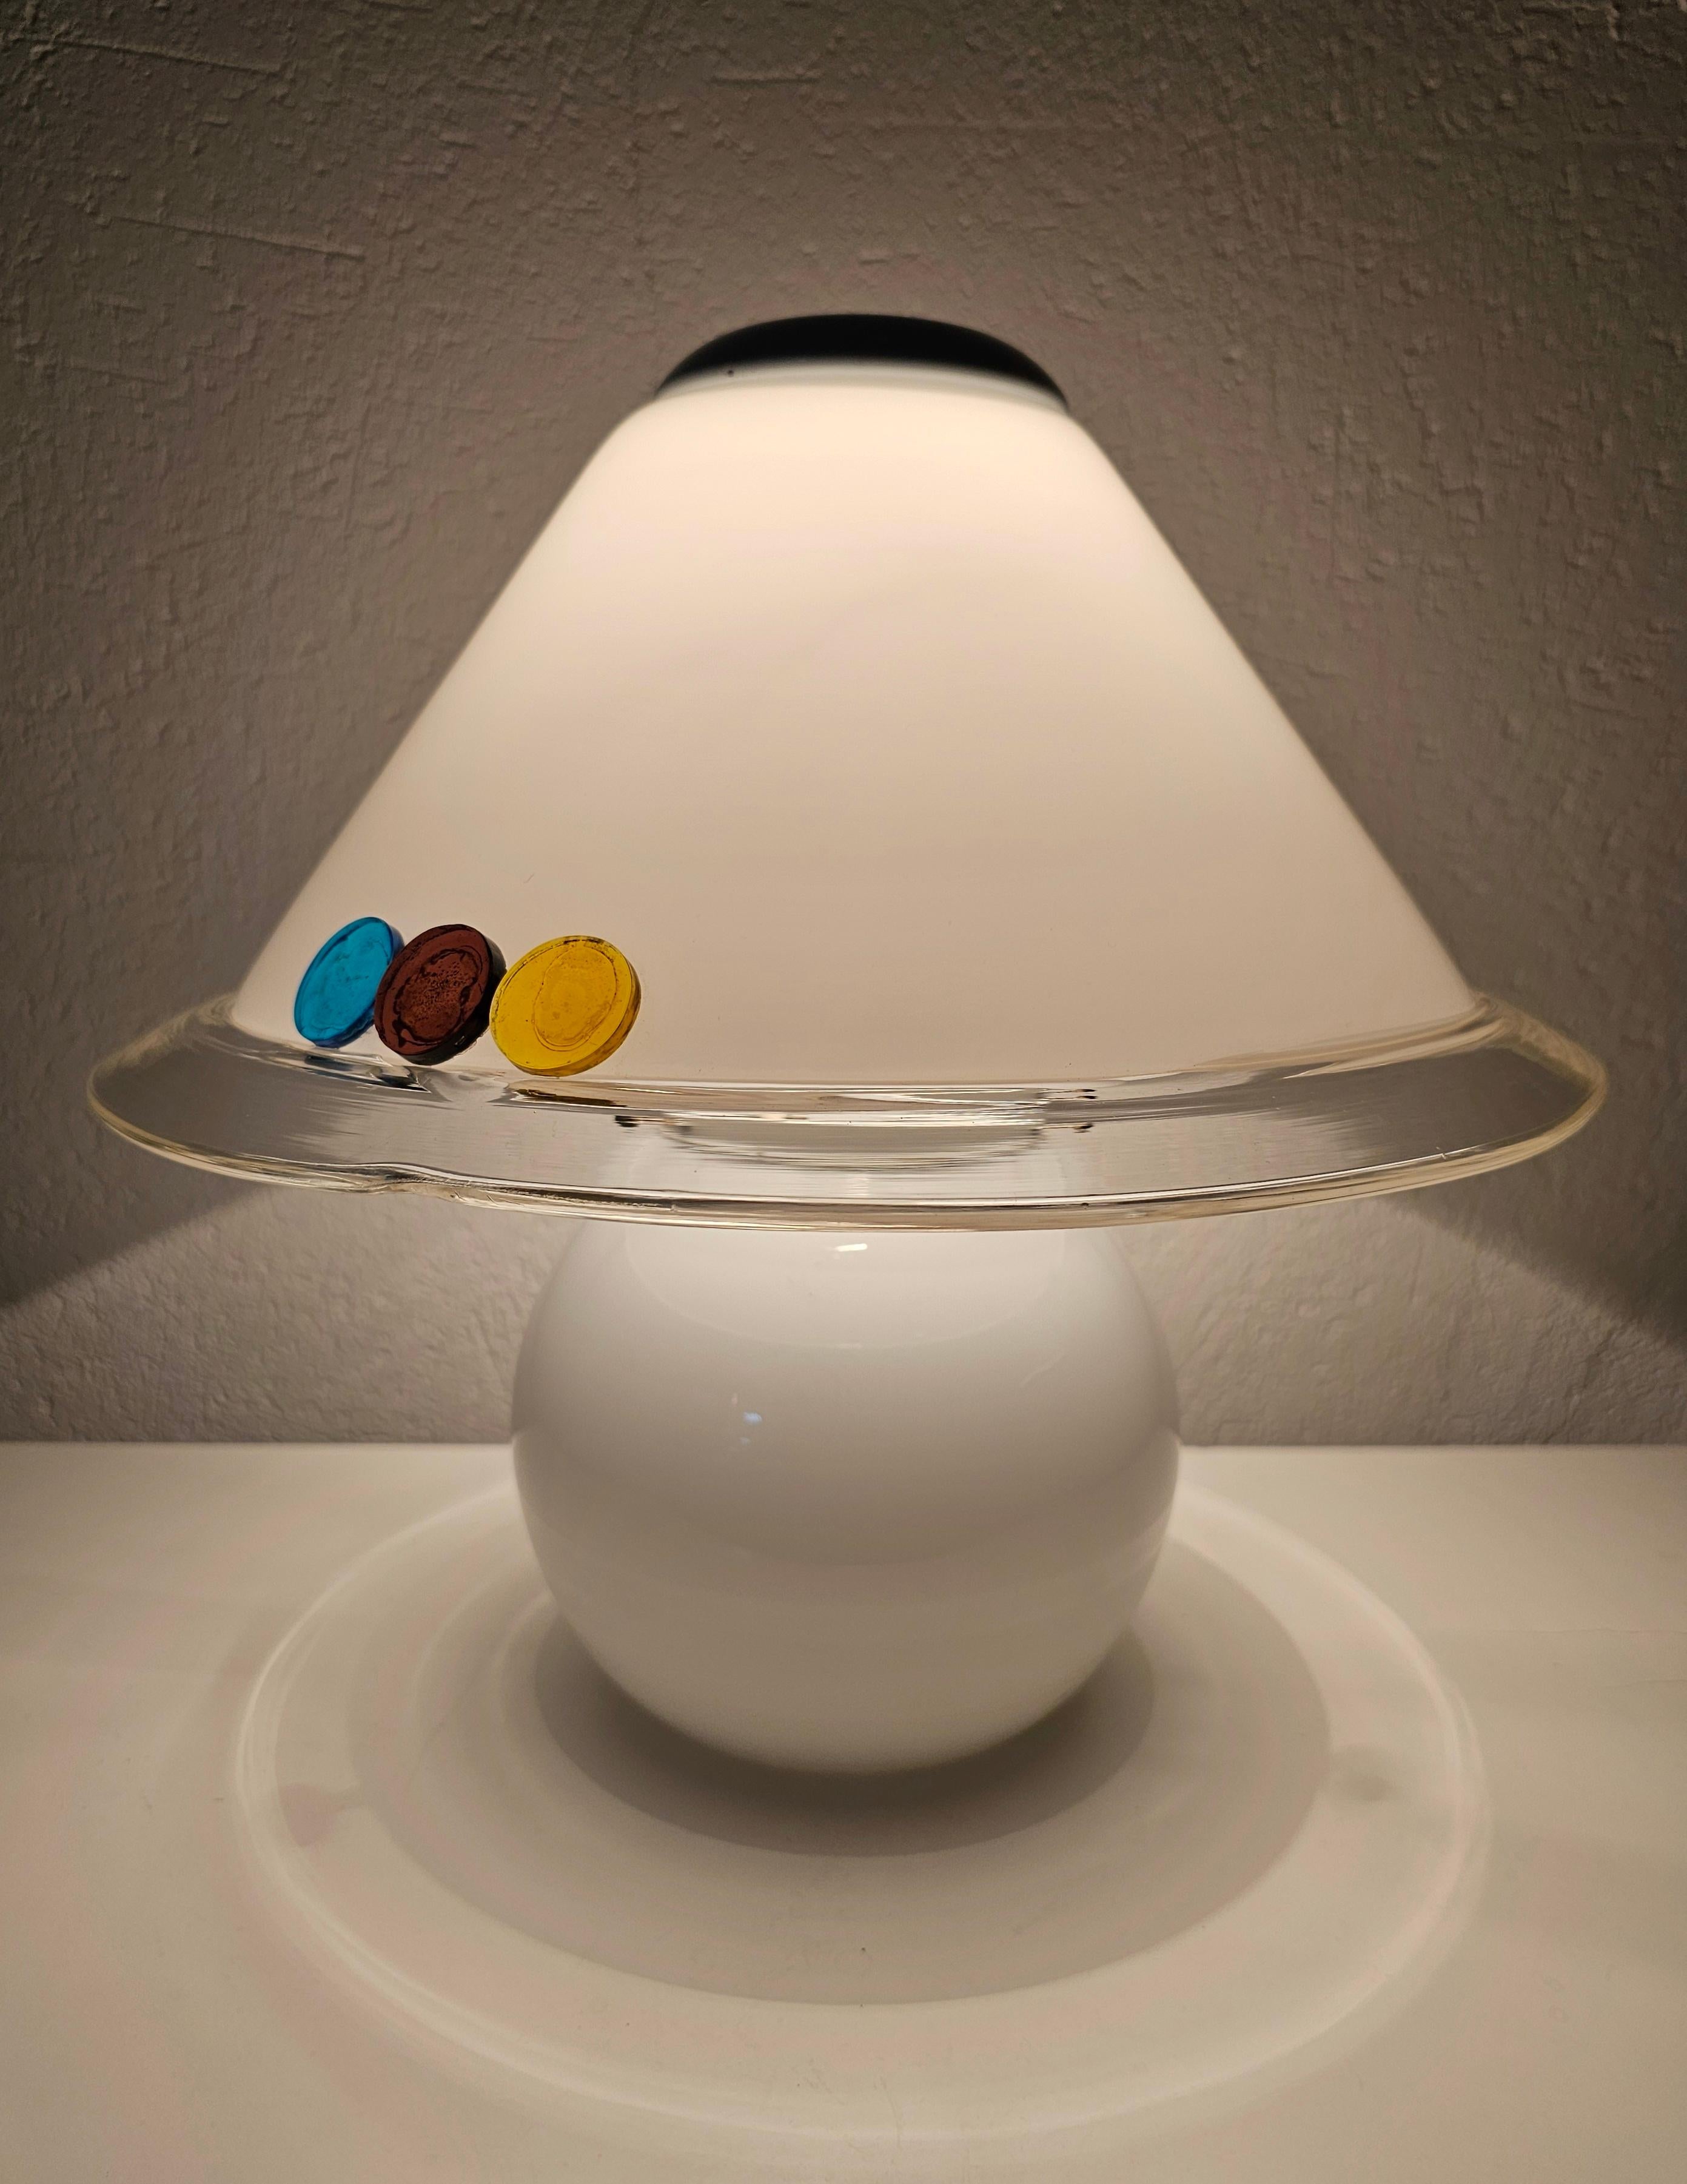 Dans ce listing, vous trouverez une magnifique lampe de table Mid Century Modern en verre Murano blanc avec des détails en verre coloré. Elle est dotée de deux lumières, l'une à l'intérieur de la base de la lampe et la seconde sous l'abat-jour, qui